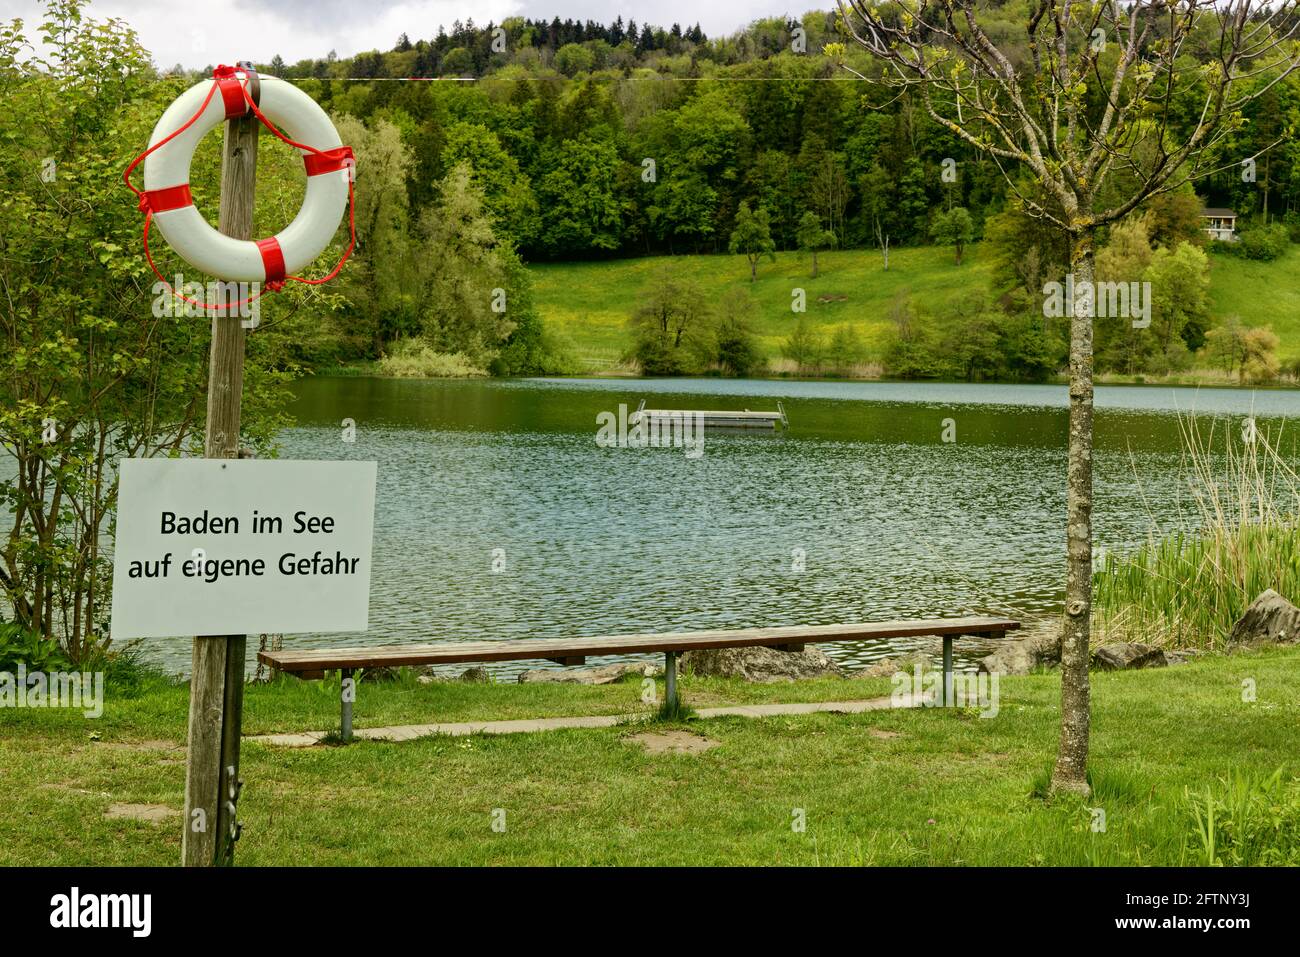 lago piscina all'aperto con piattaforma per nuoto in verde con cartello in tedesco, tedesco testo traduzione: nuotare nel lago a proprio rischio Foto Stock